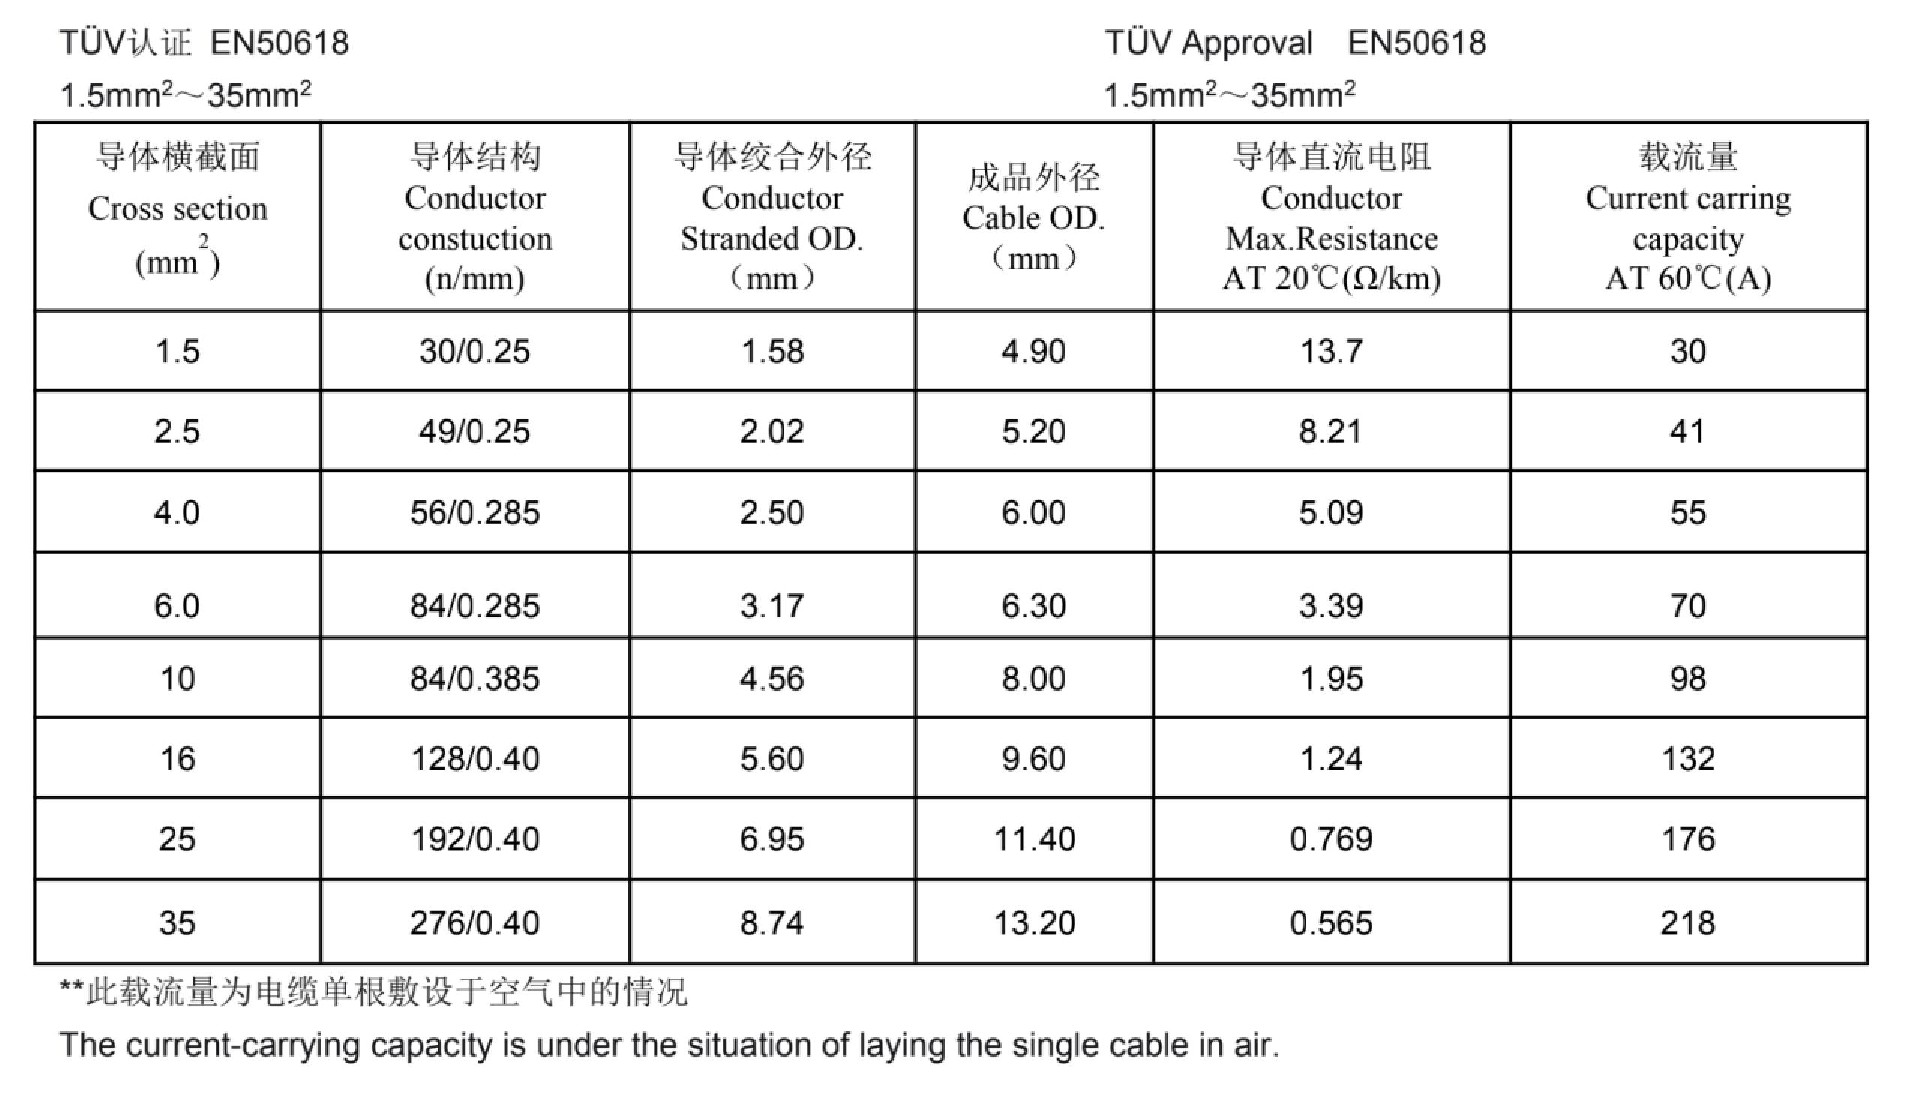 4mm twin core solar cable EN 50618 sizes